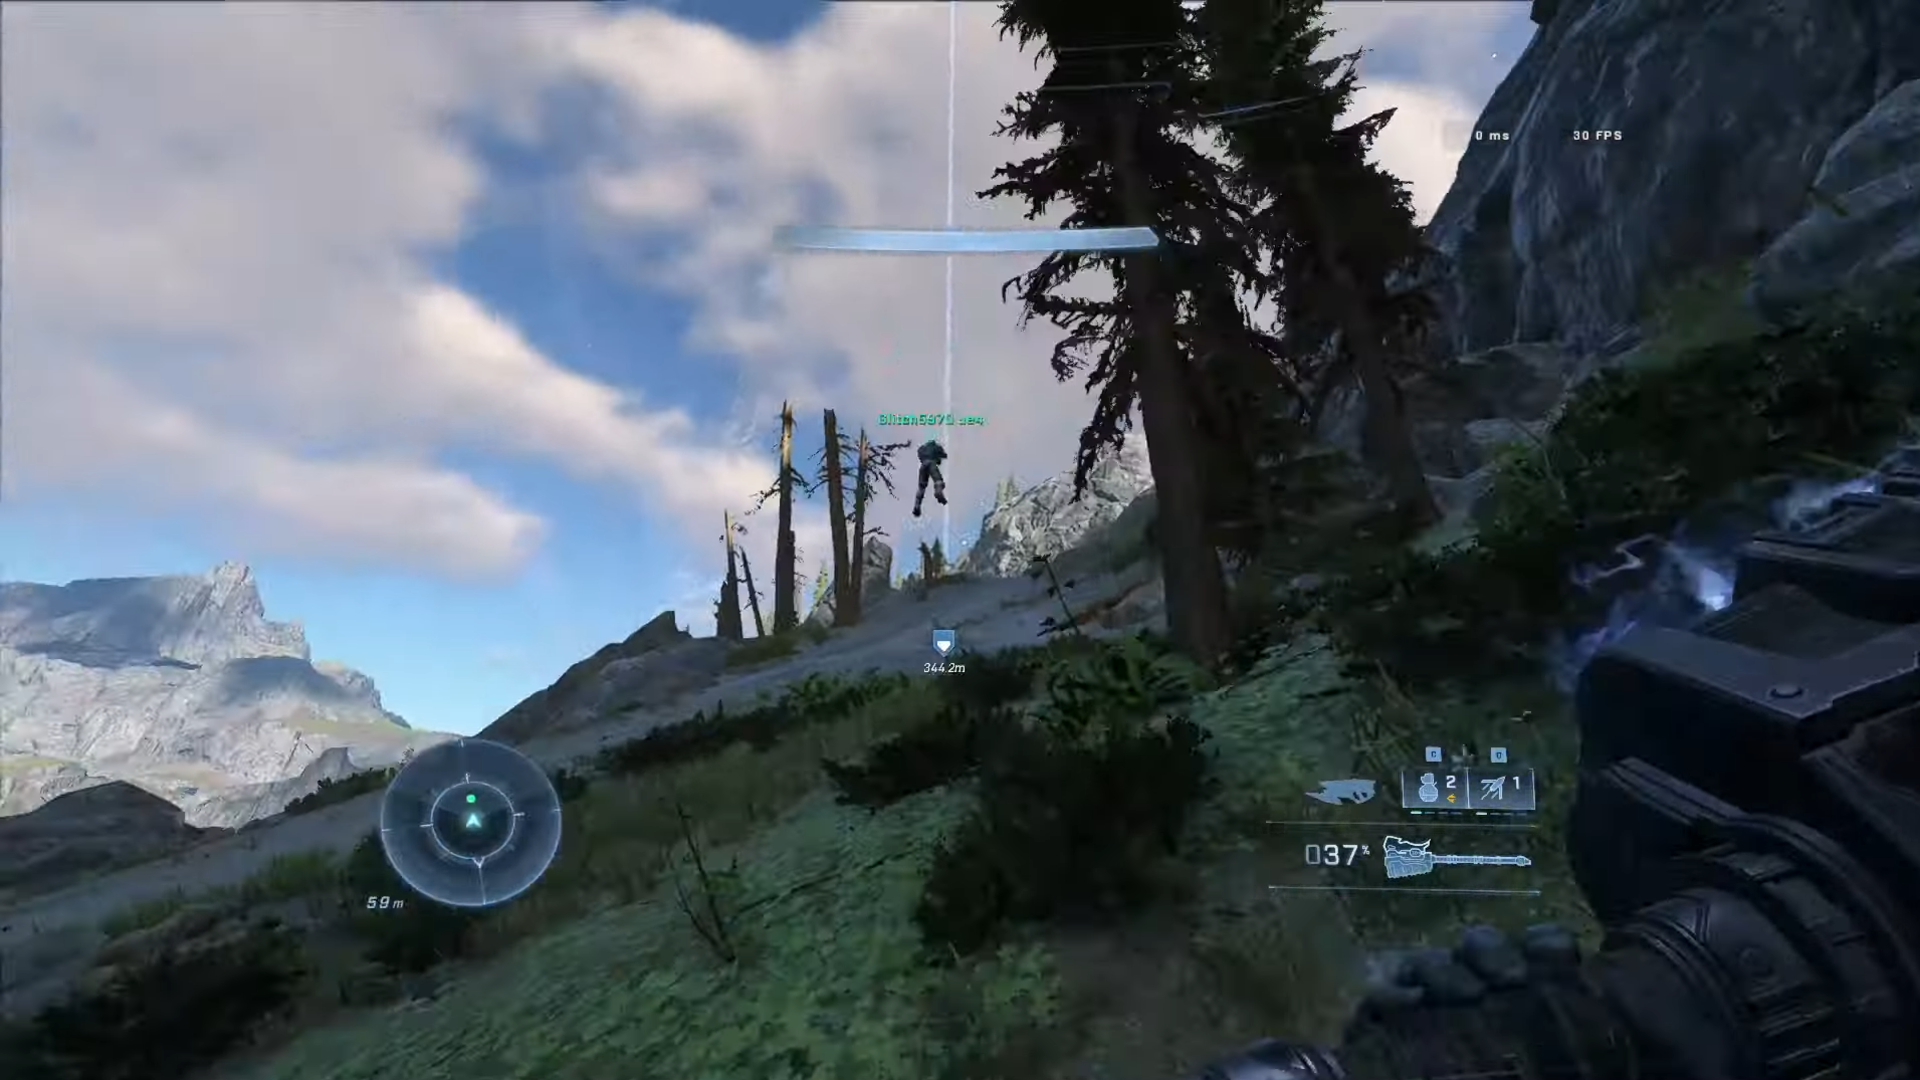 Captura de pantalla del joc cooperatiu d'Halo Infinite